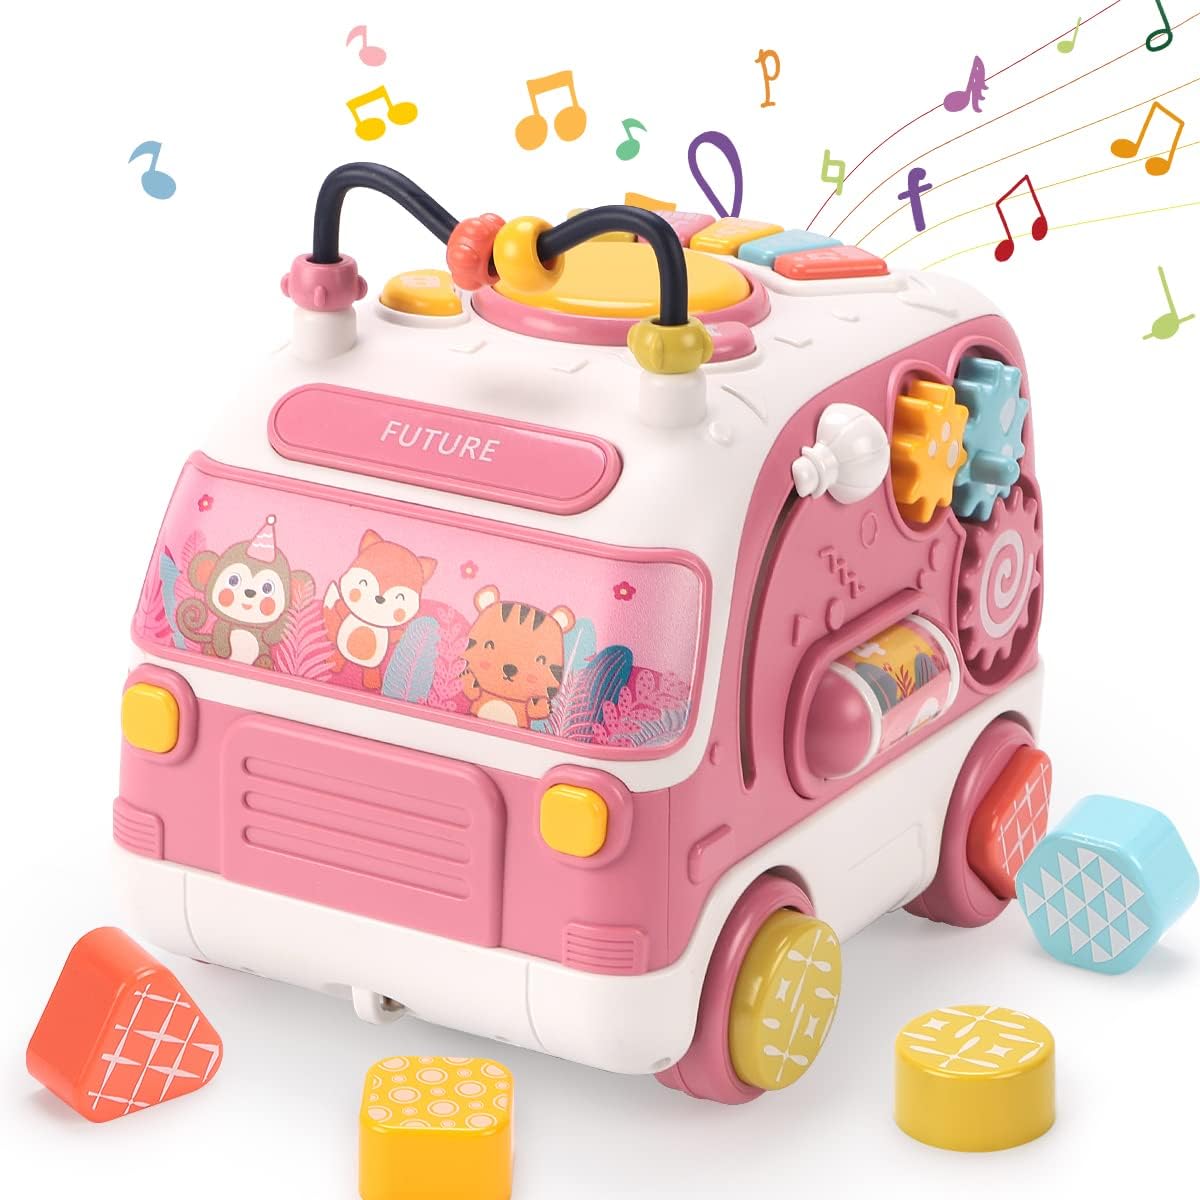 【送料無料】知育玩具 赤ちゃん おもちゃ 多機能 車 バス 電気 玩具 ピアノ 音楽のおもちゃ音と光と 手遊びいっぱい 鍵盤ドラム楽器 図形認知 積み木 早期開発 指先訓練 色認知 女の子